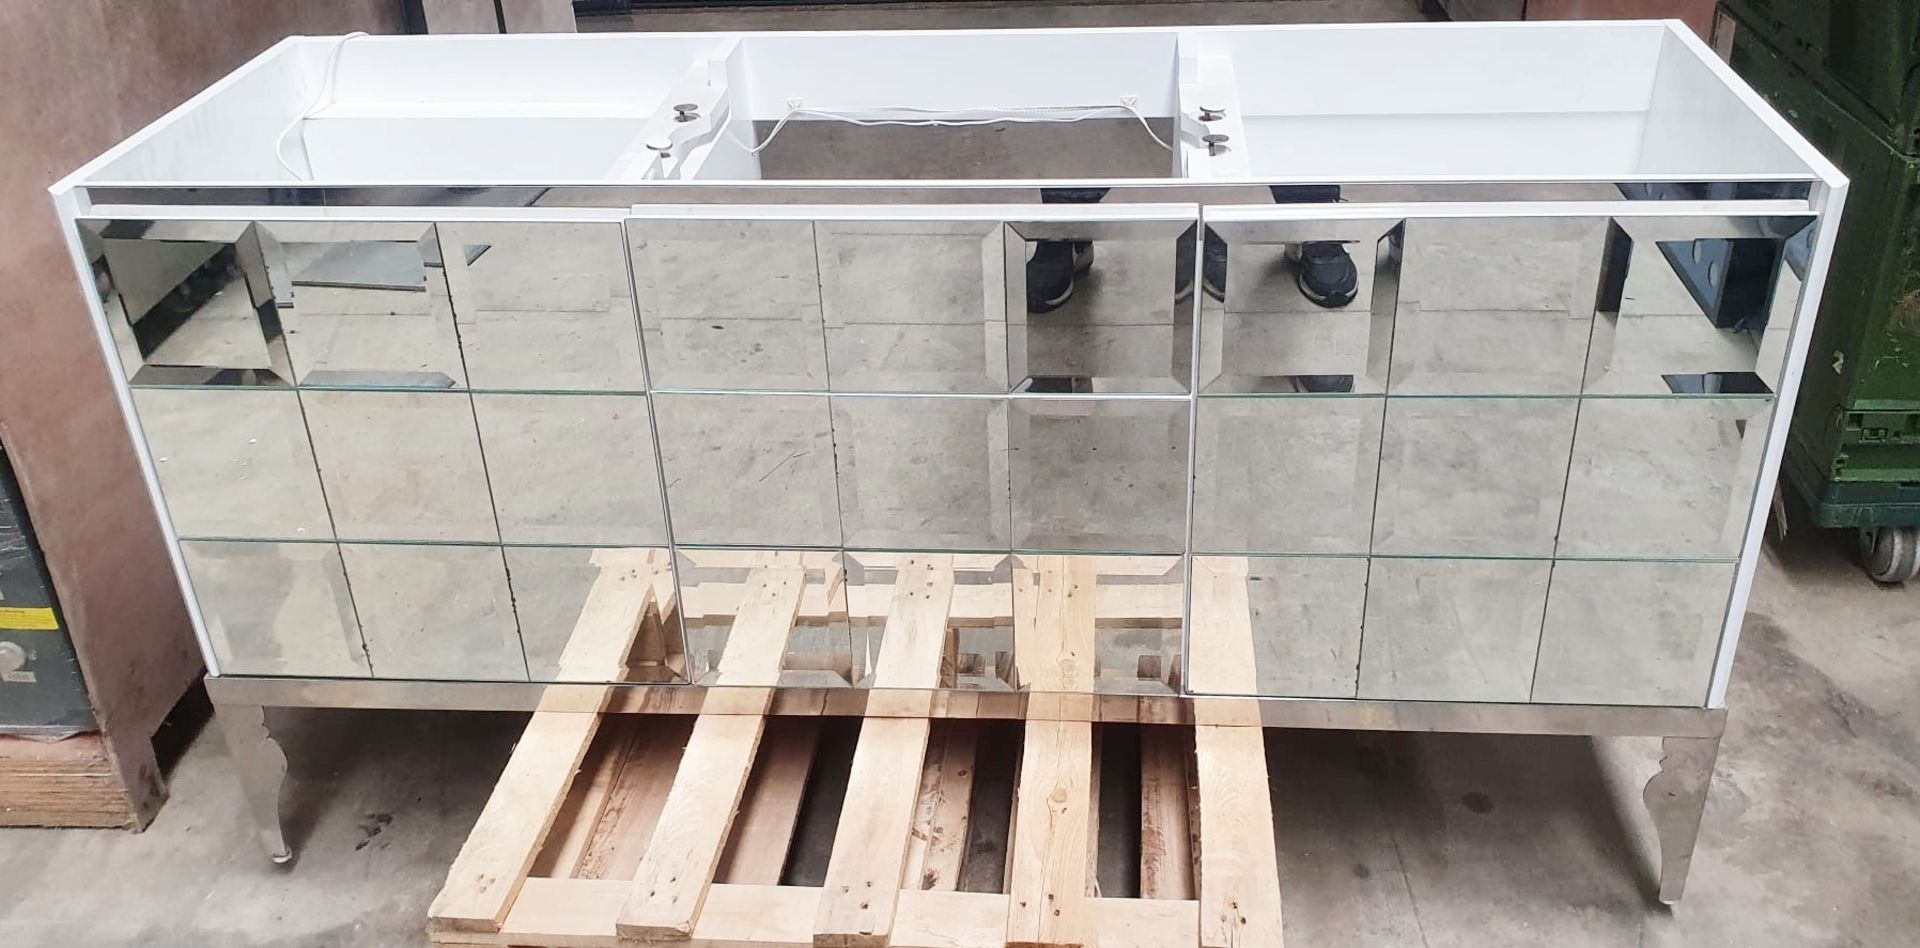 1 x GODI High-end Freestanding Mirrored 2-Door Bathroom Vanity Unit, In White - Ex-Showroom